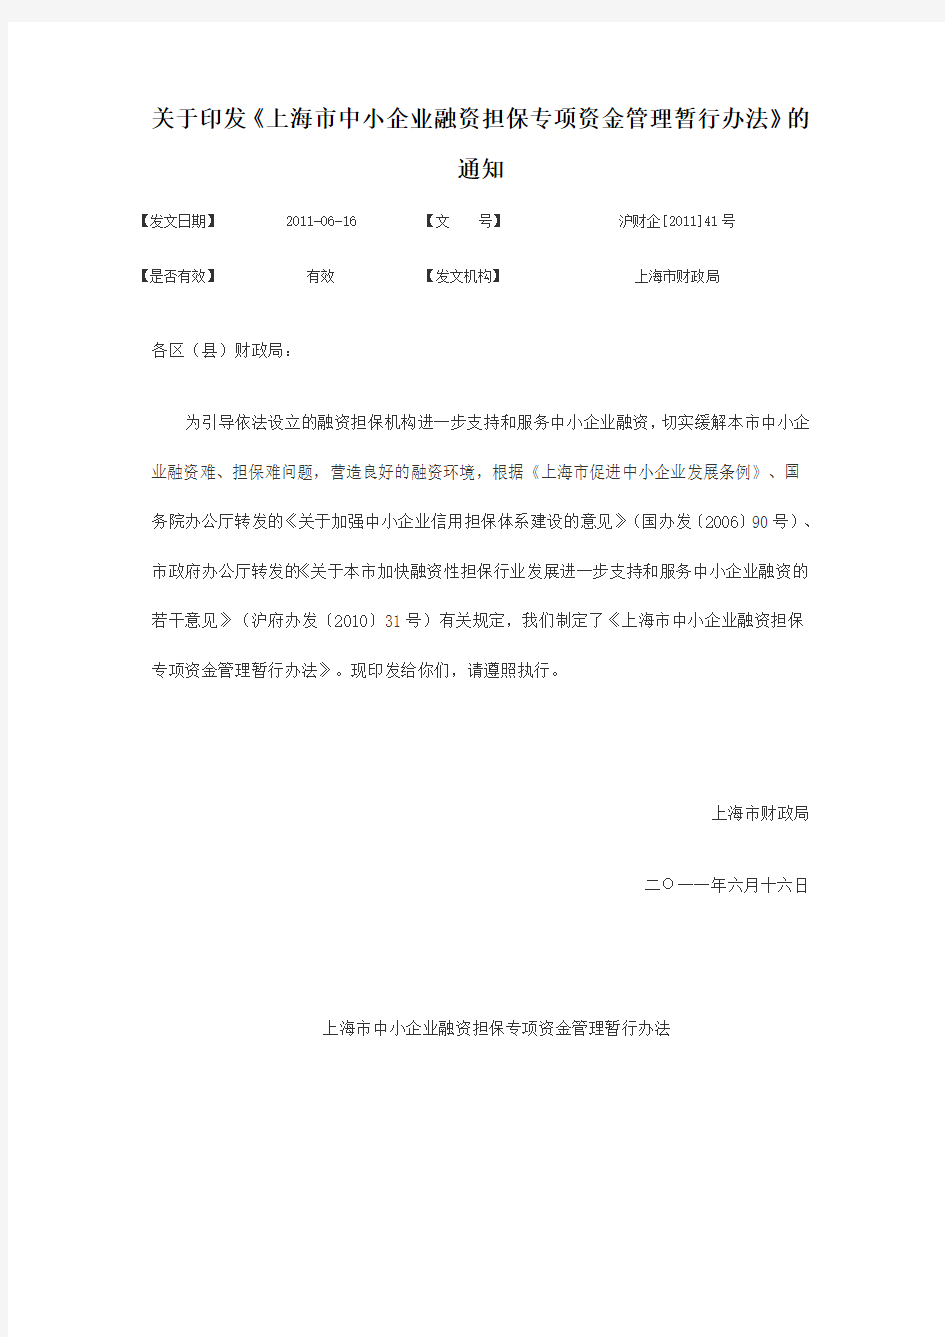 上海市中小企业融资担保专项资金管理暂行办法